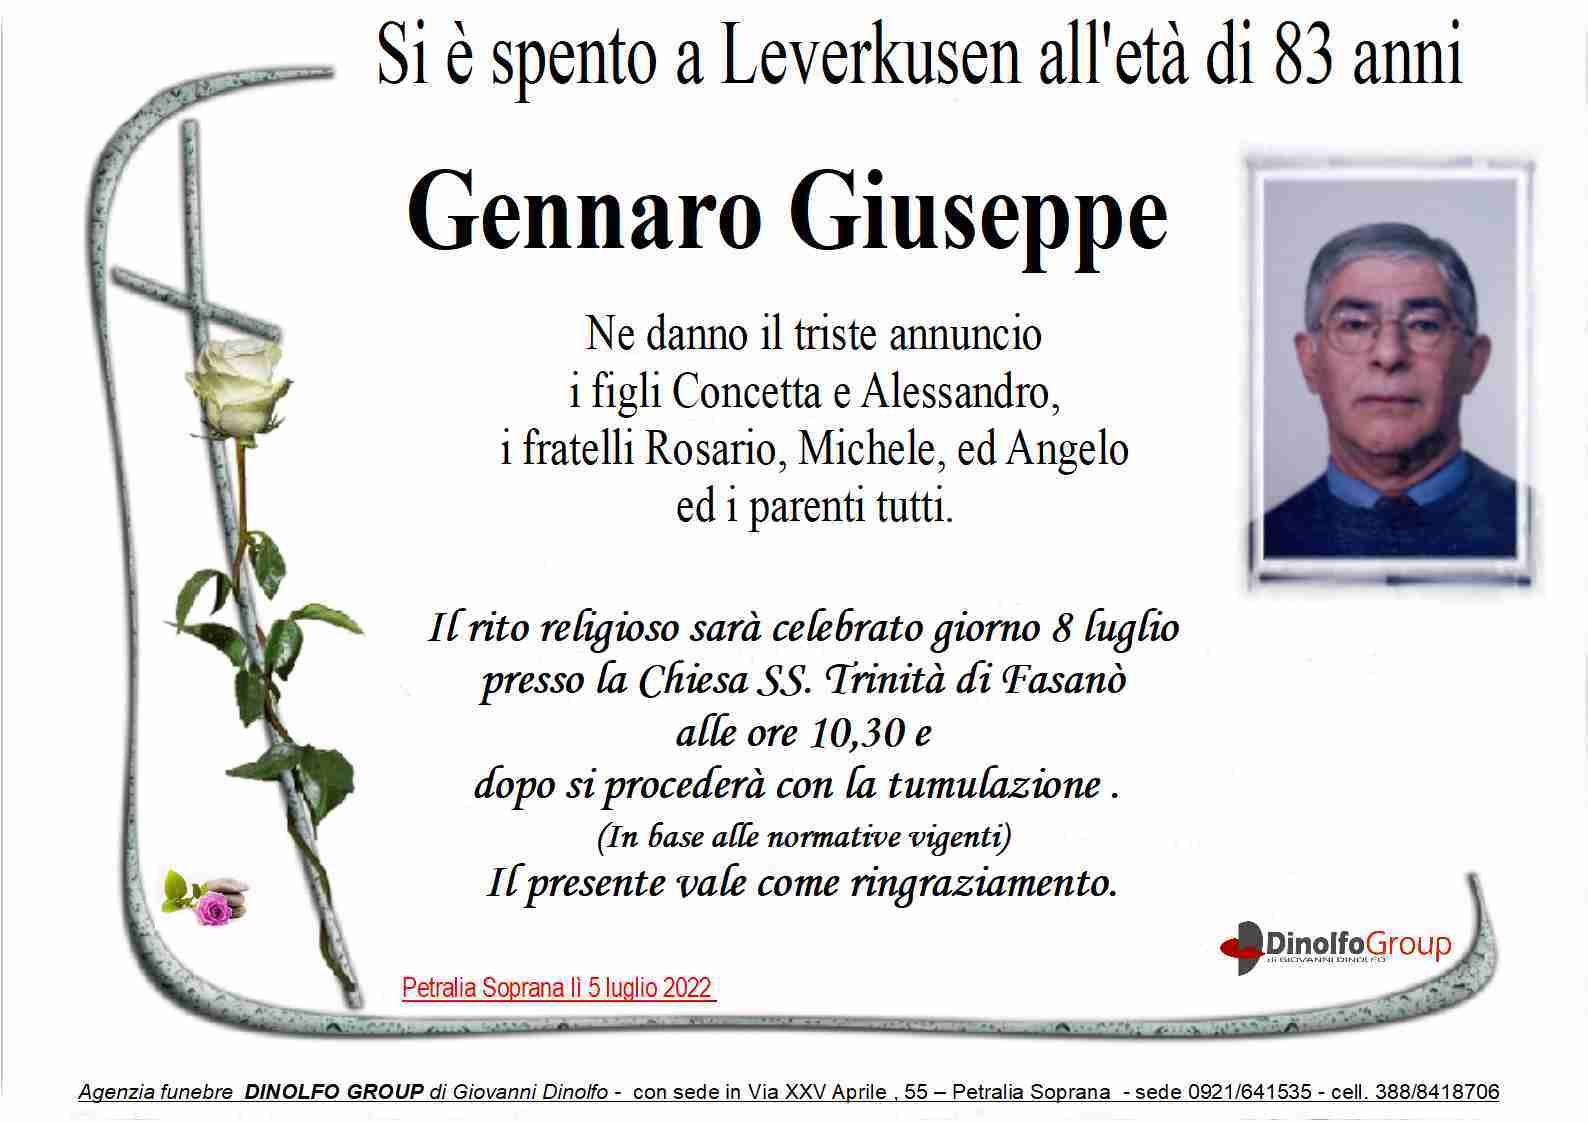 Giuseppe Gennaro